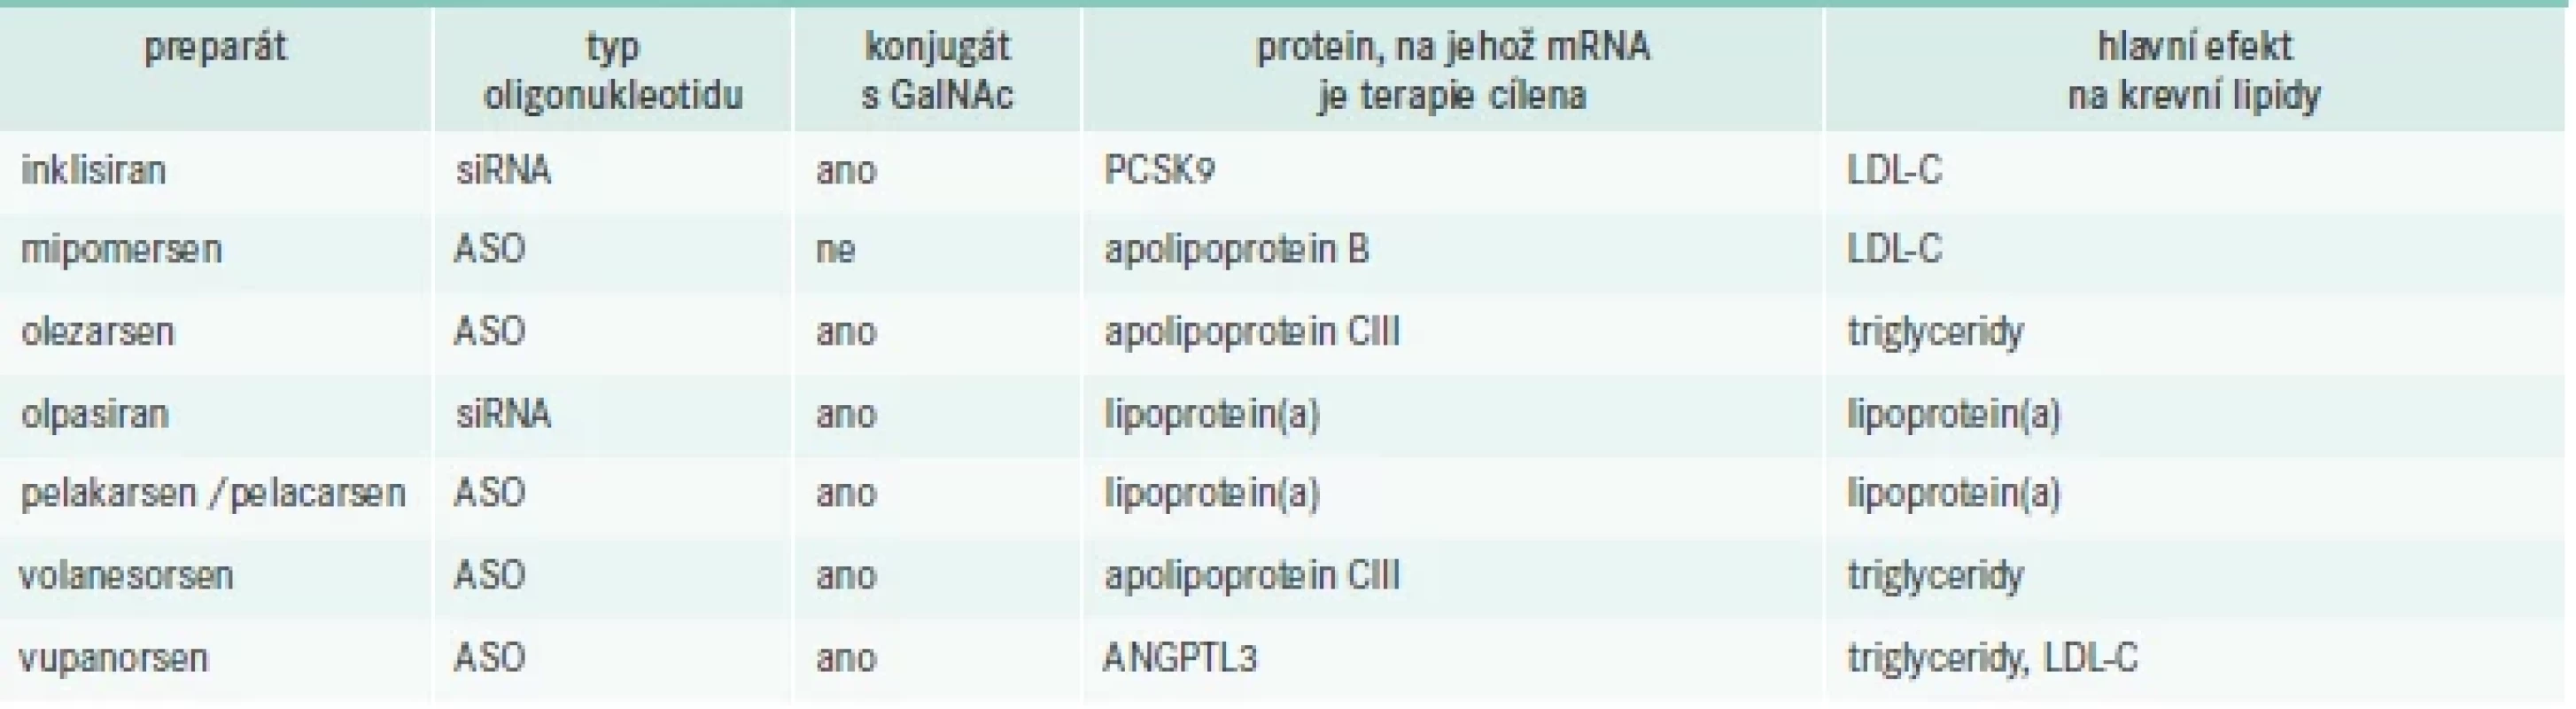 Příklady preparátů ze skupiny oligonukleotidů cílené na terapii dyslipidemií (řazeno abecedně).
Upraveno podle [18,20]